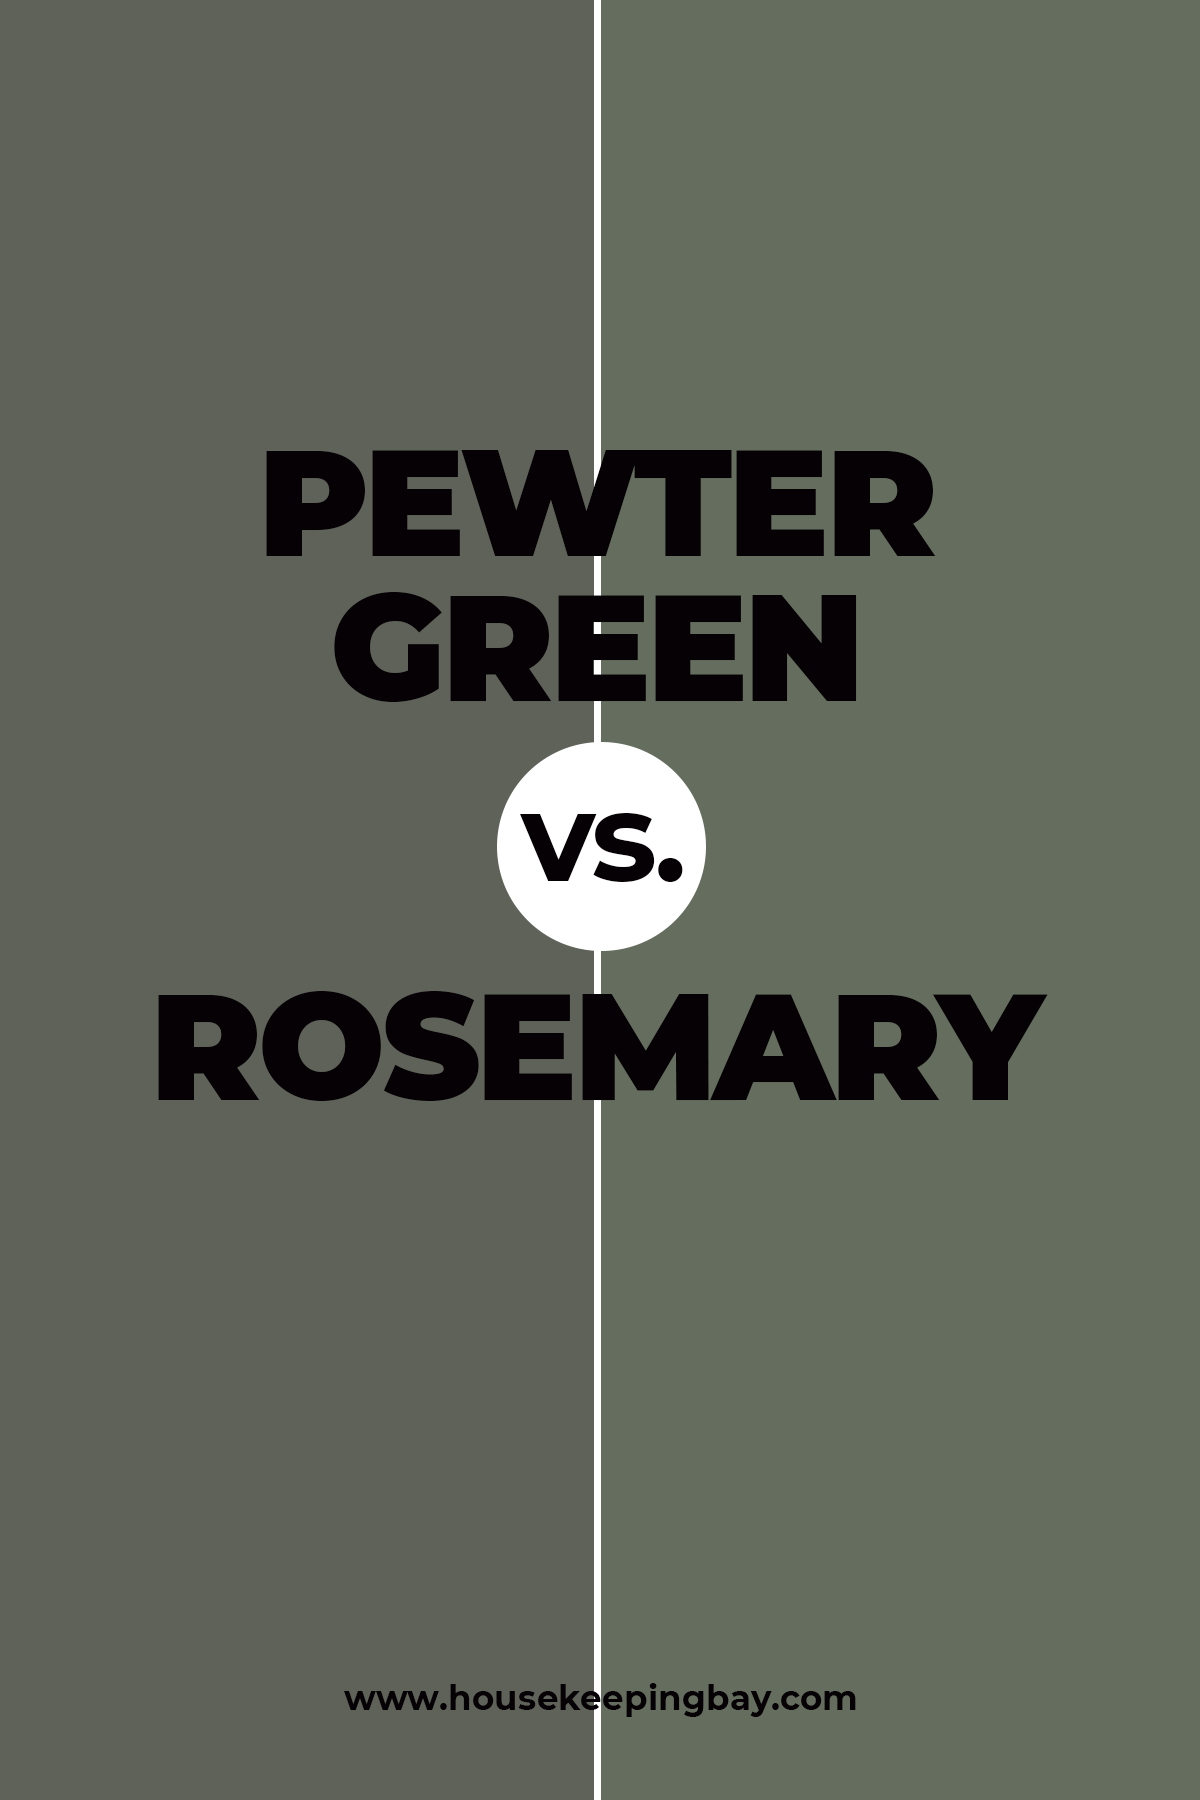 Pewter Green vs. Rosemary